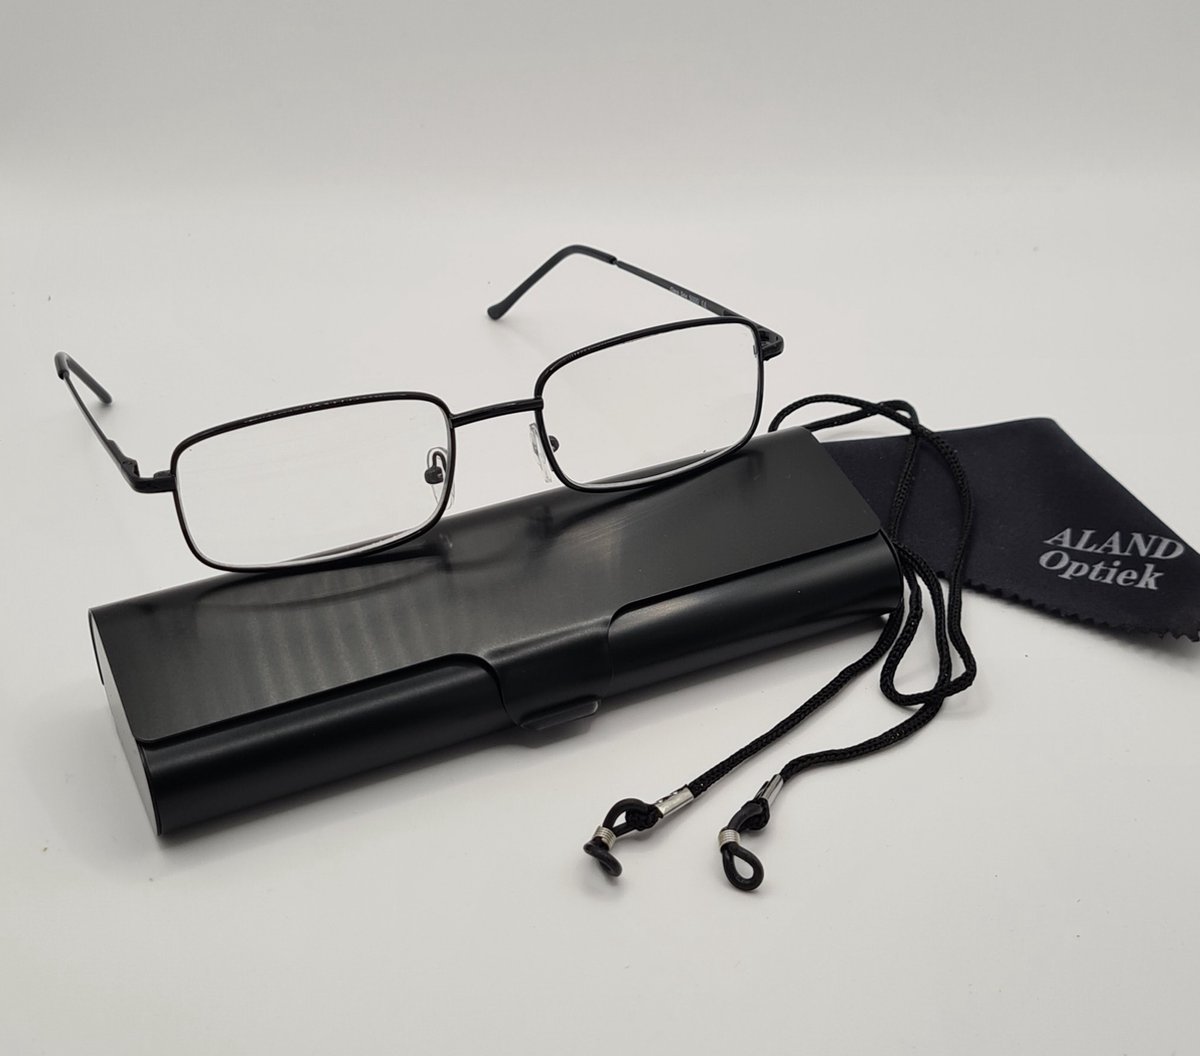 Unisex leesbril +2,0 met brillenkoker + koord + microvezeldoekje / class one 5000 / zwart / +2.0 lunettes de lecture avec étui pratique, cordon et chiffon de nettoyage pour lentilles / Aland optiek